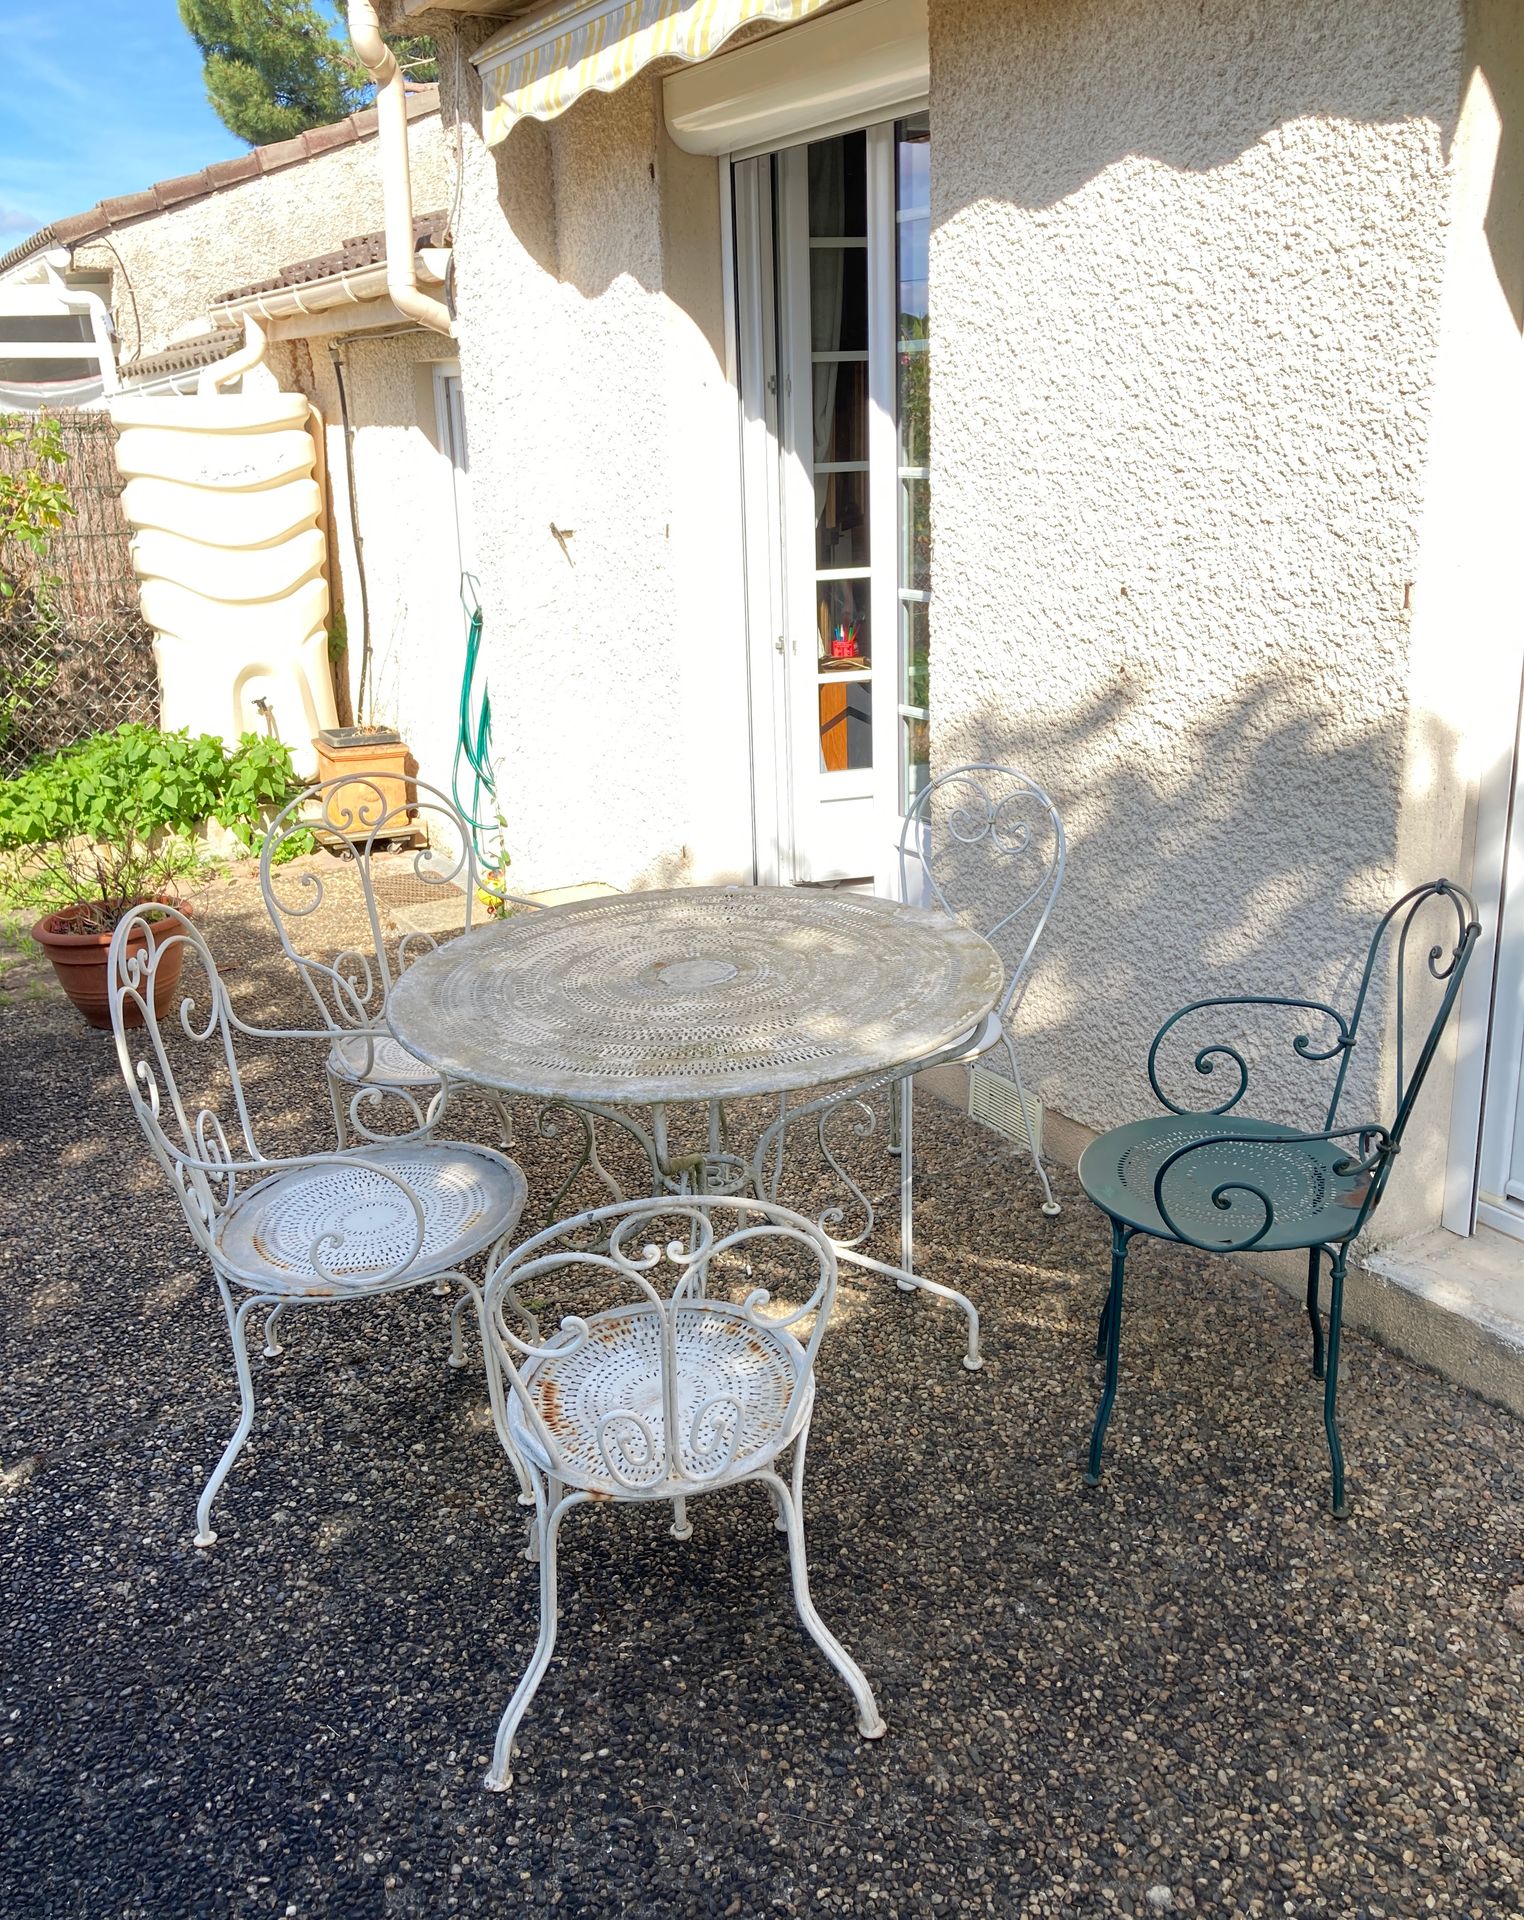 Une table en métal laqué blanc, trois fauteuils et deux chaises, dont une verte.